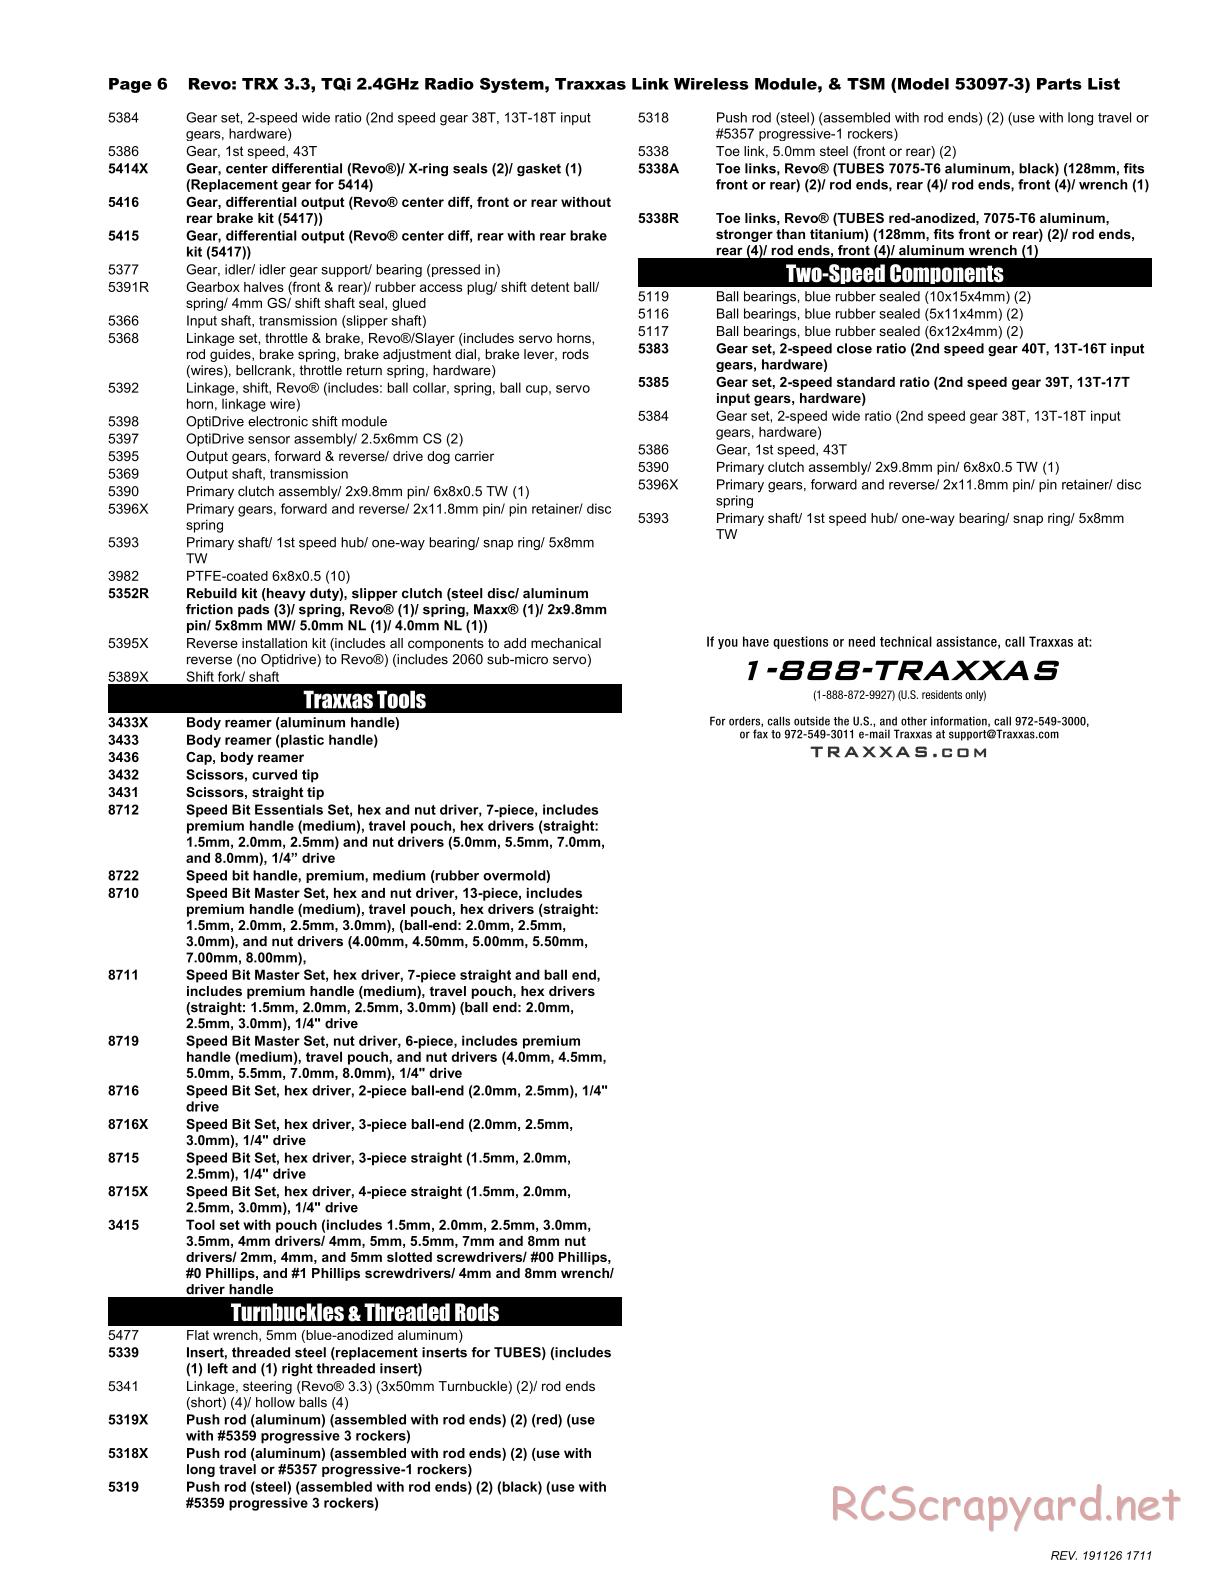 Traxxas - Revo 3.3 TSM - Parts List - Page 6